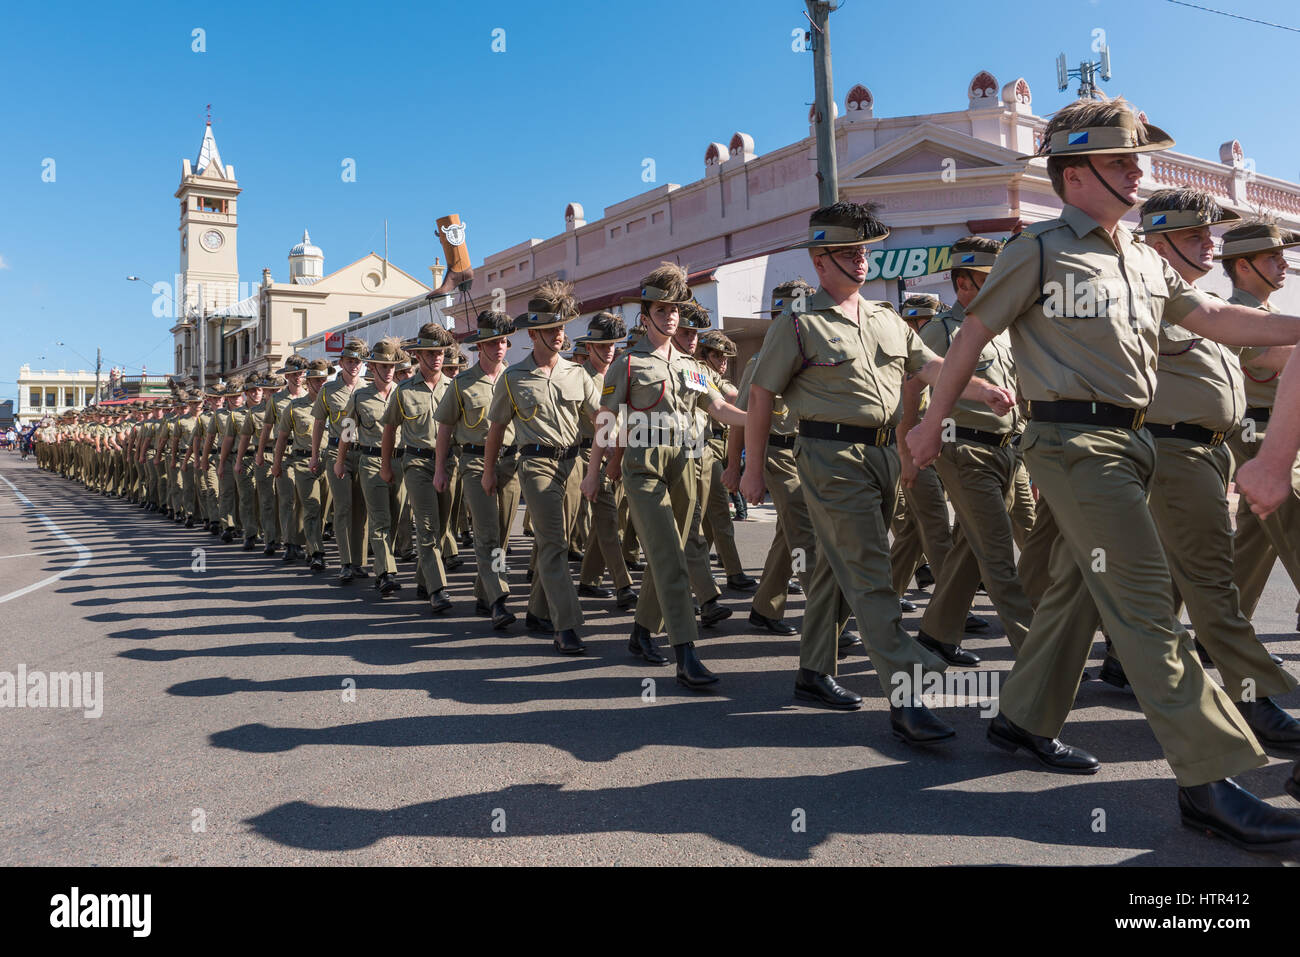 Charters Towers, Australie - 25 Avril 2016 : Des soldats marchant sur la Journée de l'Anzac à Charters Towers, Queensland Australie Banque D'Images